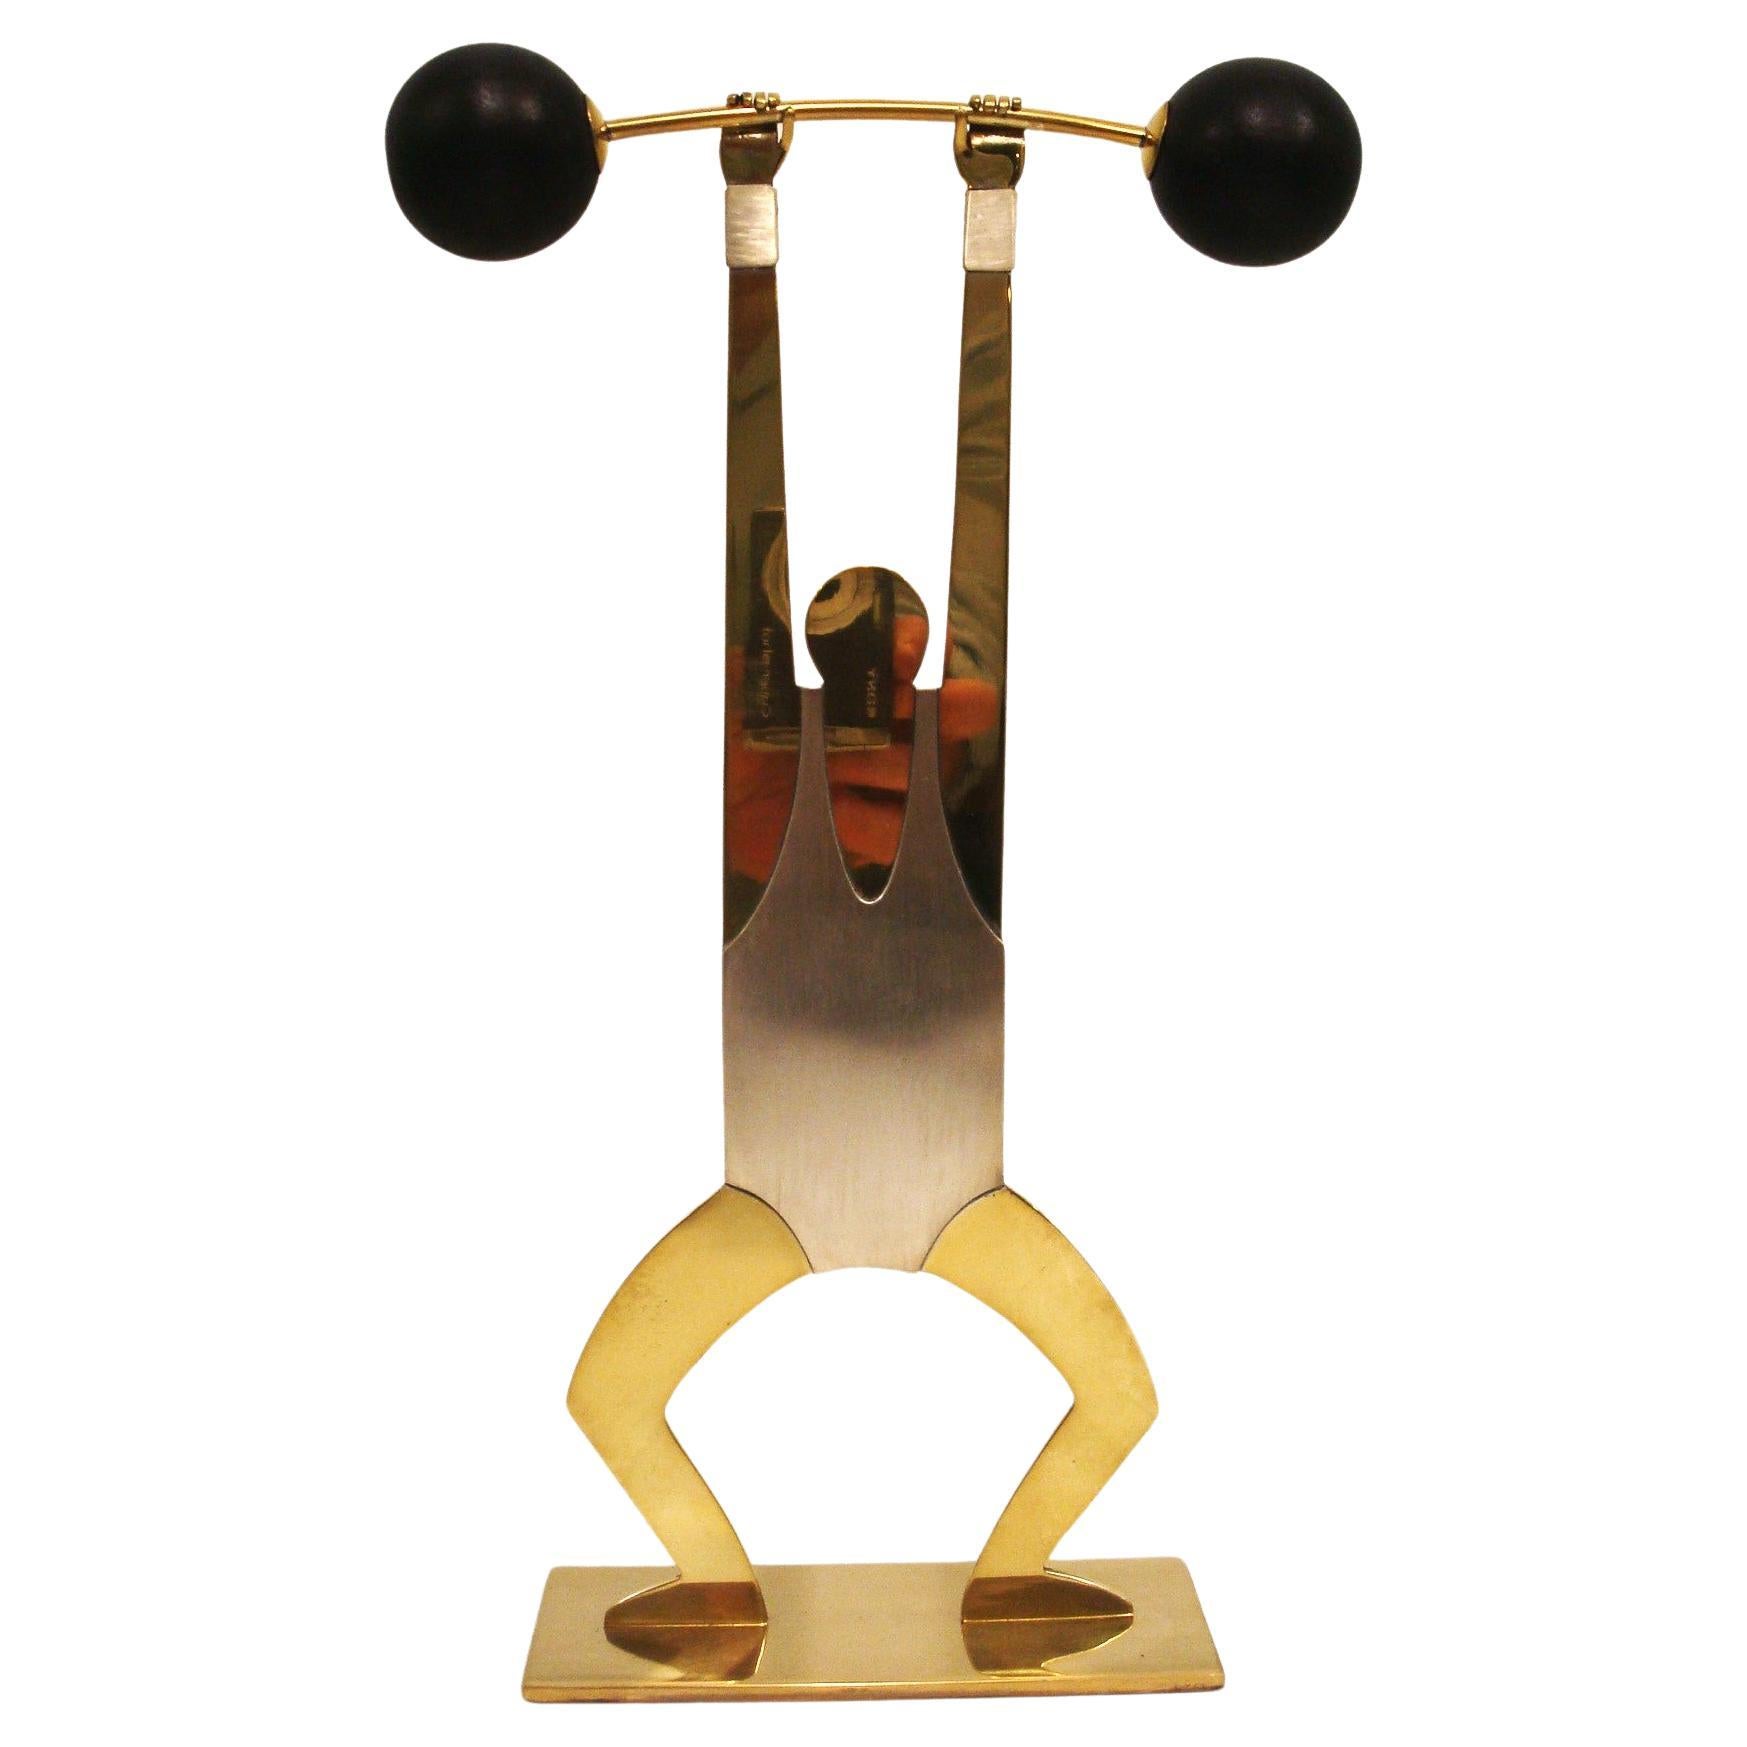 Weightlifter Hagenauer Mid-Century / Art Deco Sculpture, Austria, 1930